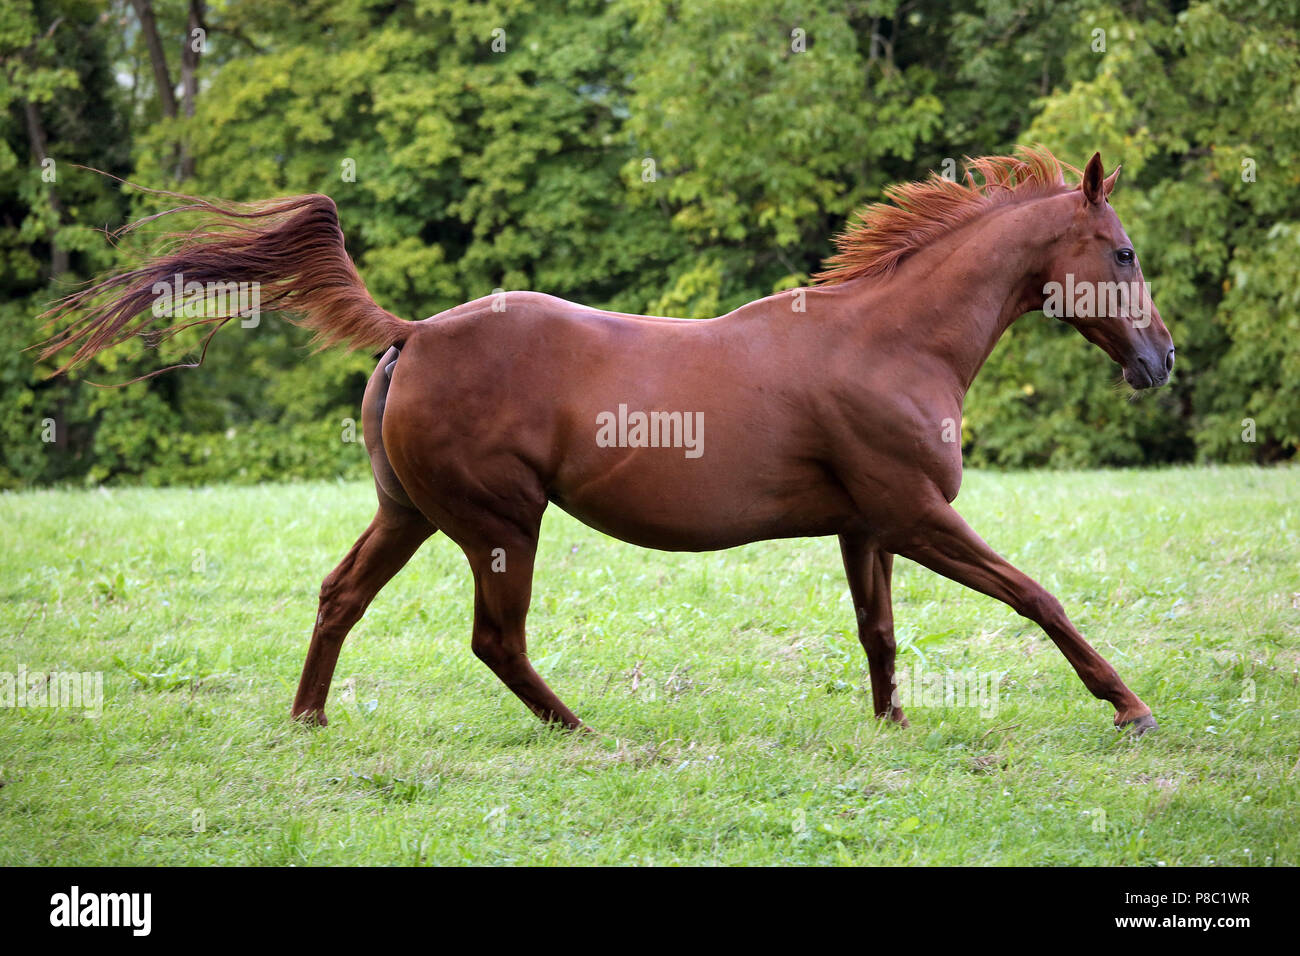 Westerberg con clavos, caballos galopando en la pastura Foto de stock